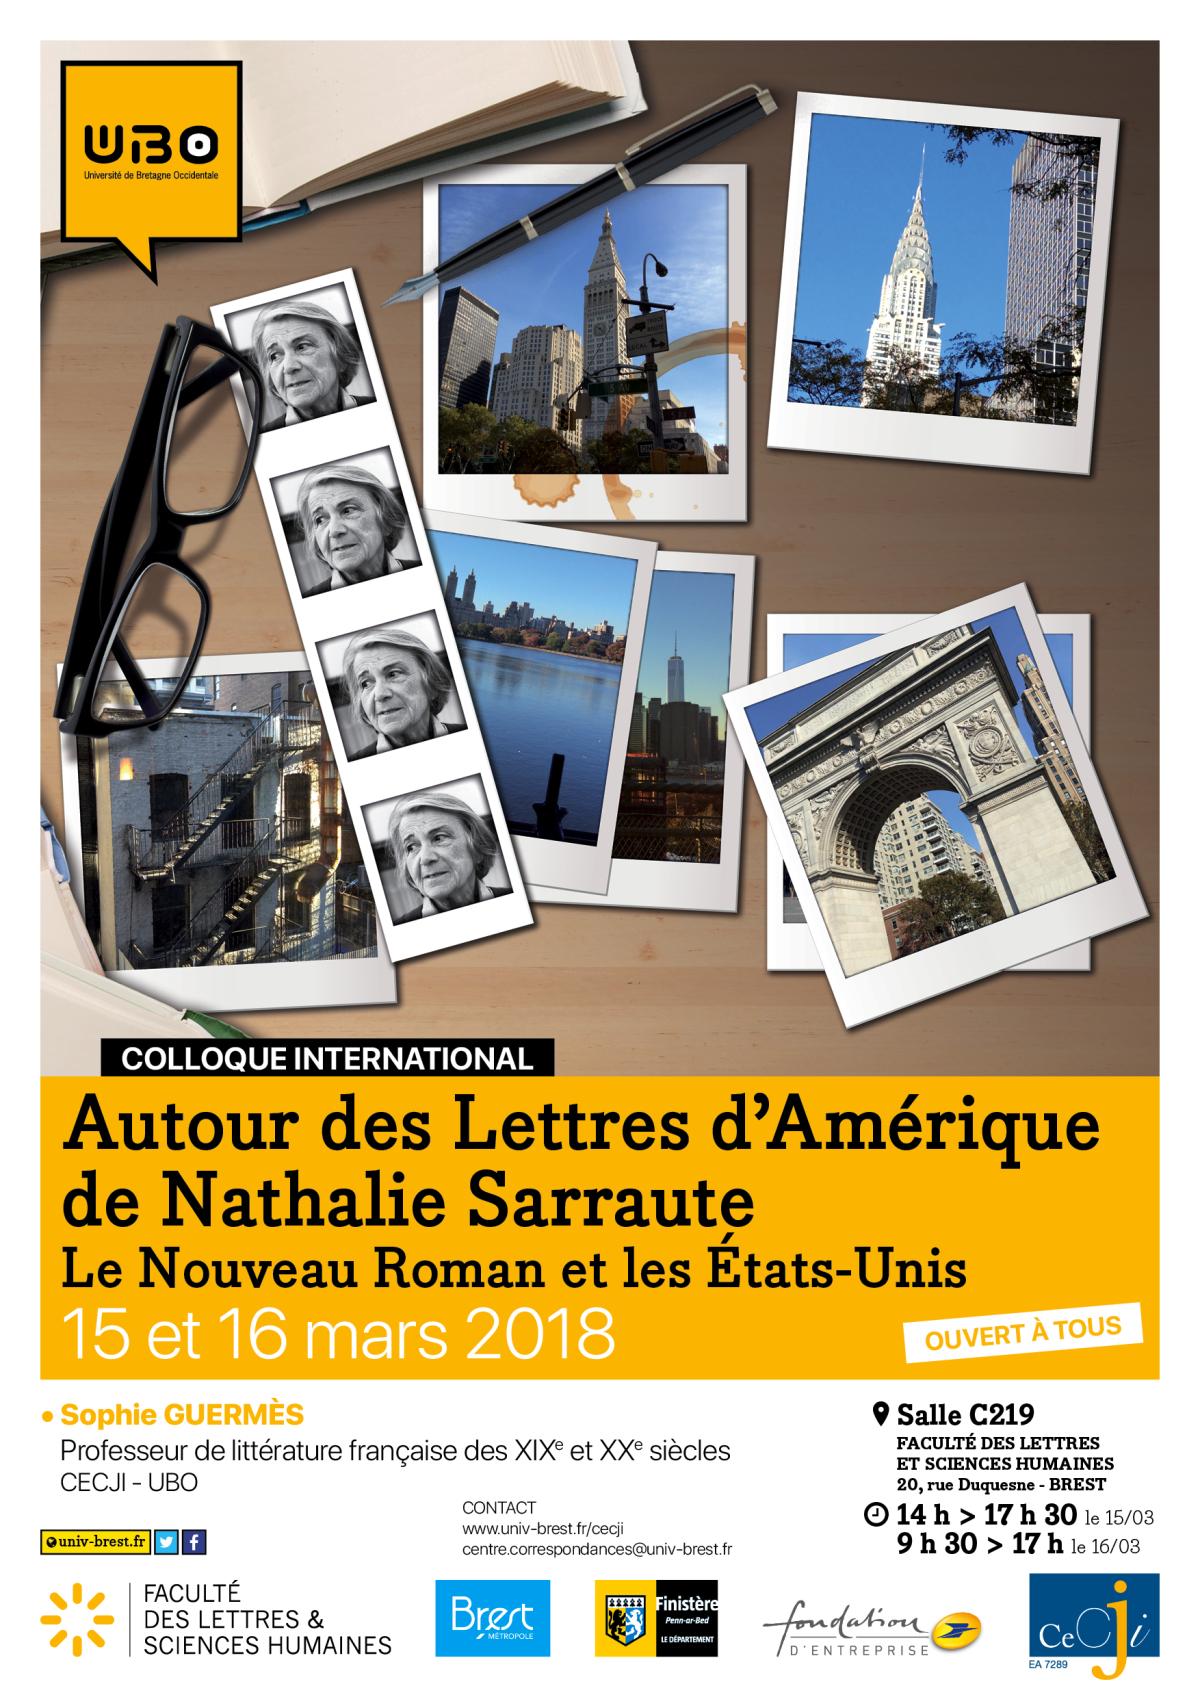 Autour des Lettres d'Amérique de Nathalie Sarraute